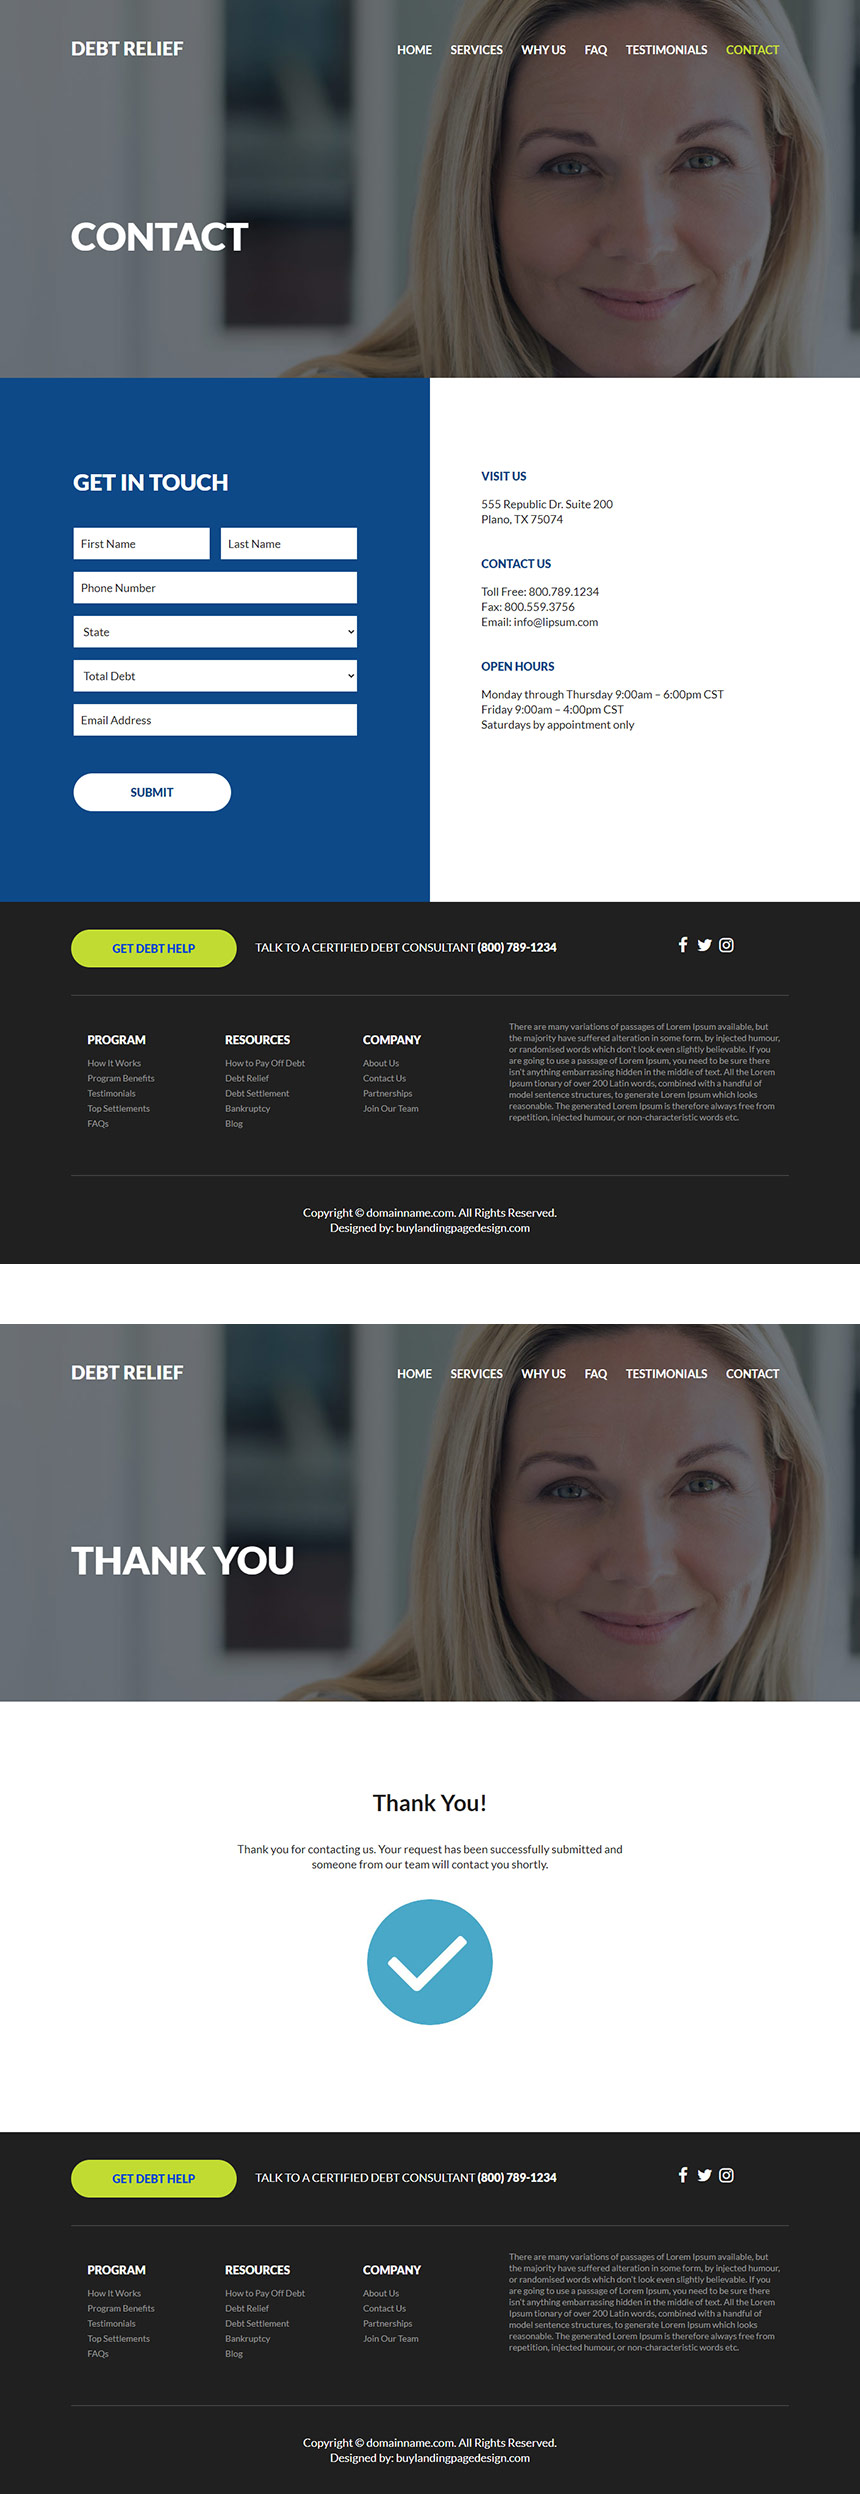 debt relief services responsive website design